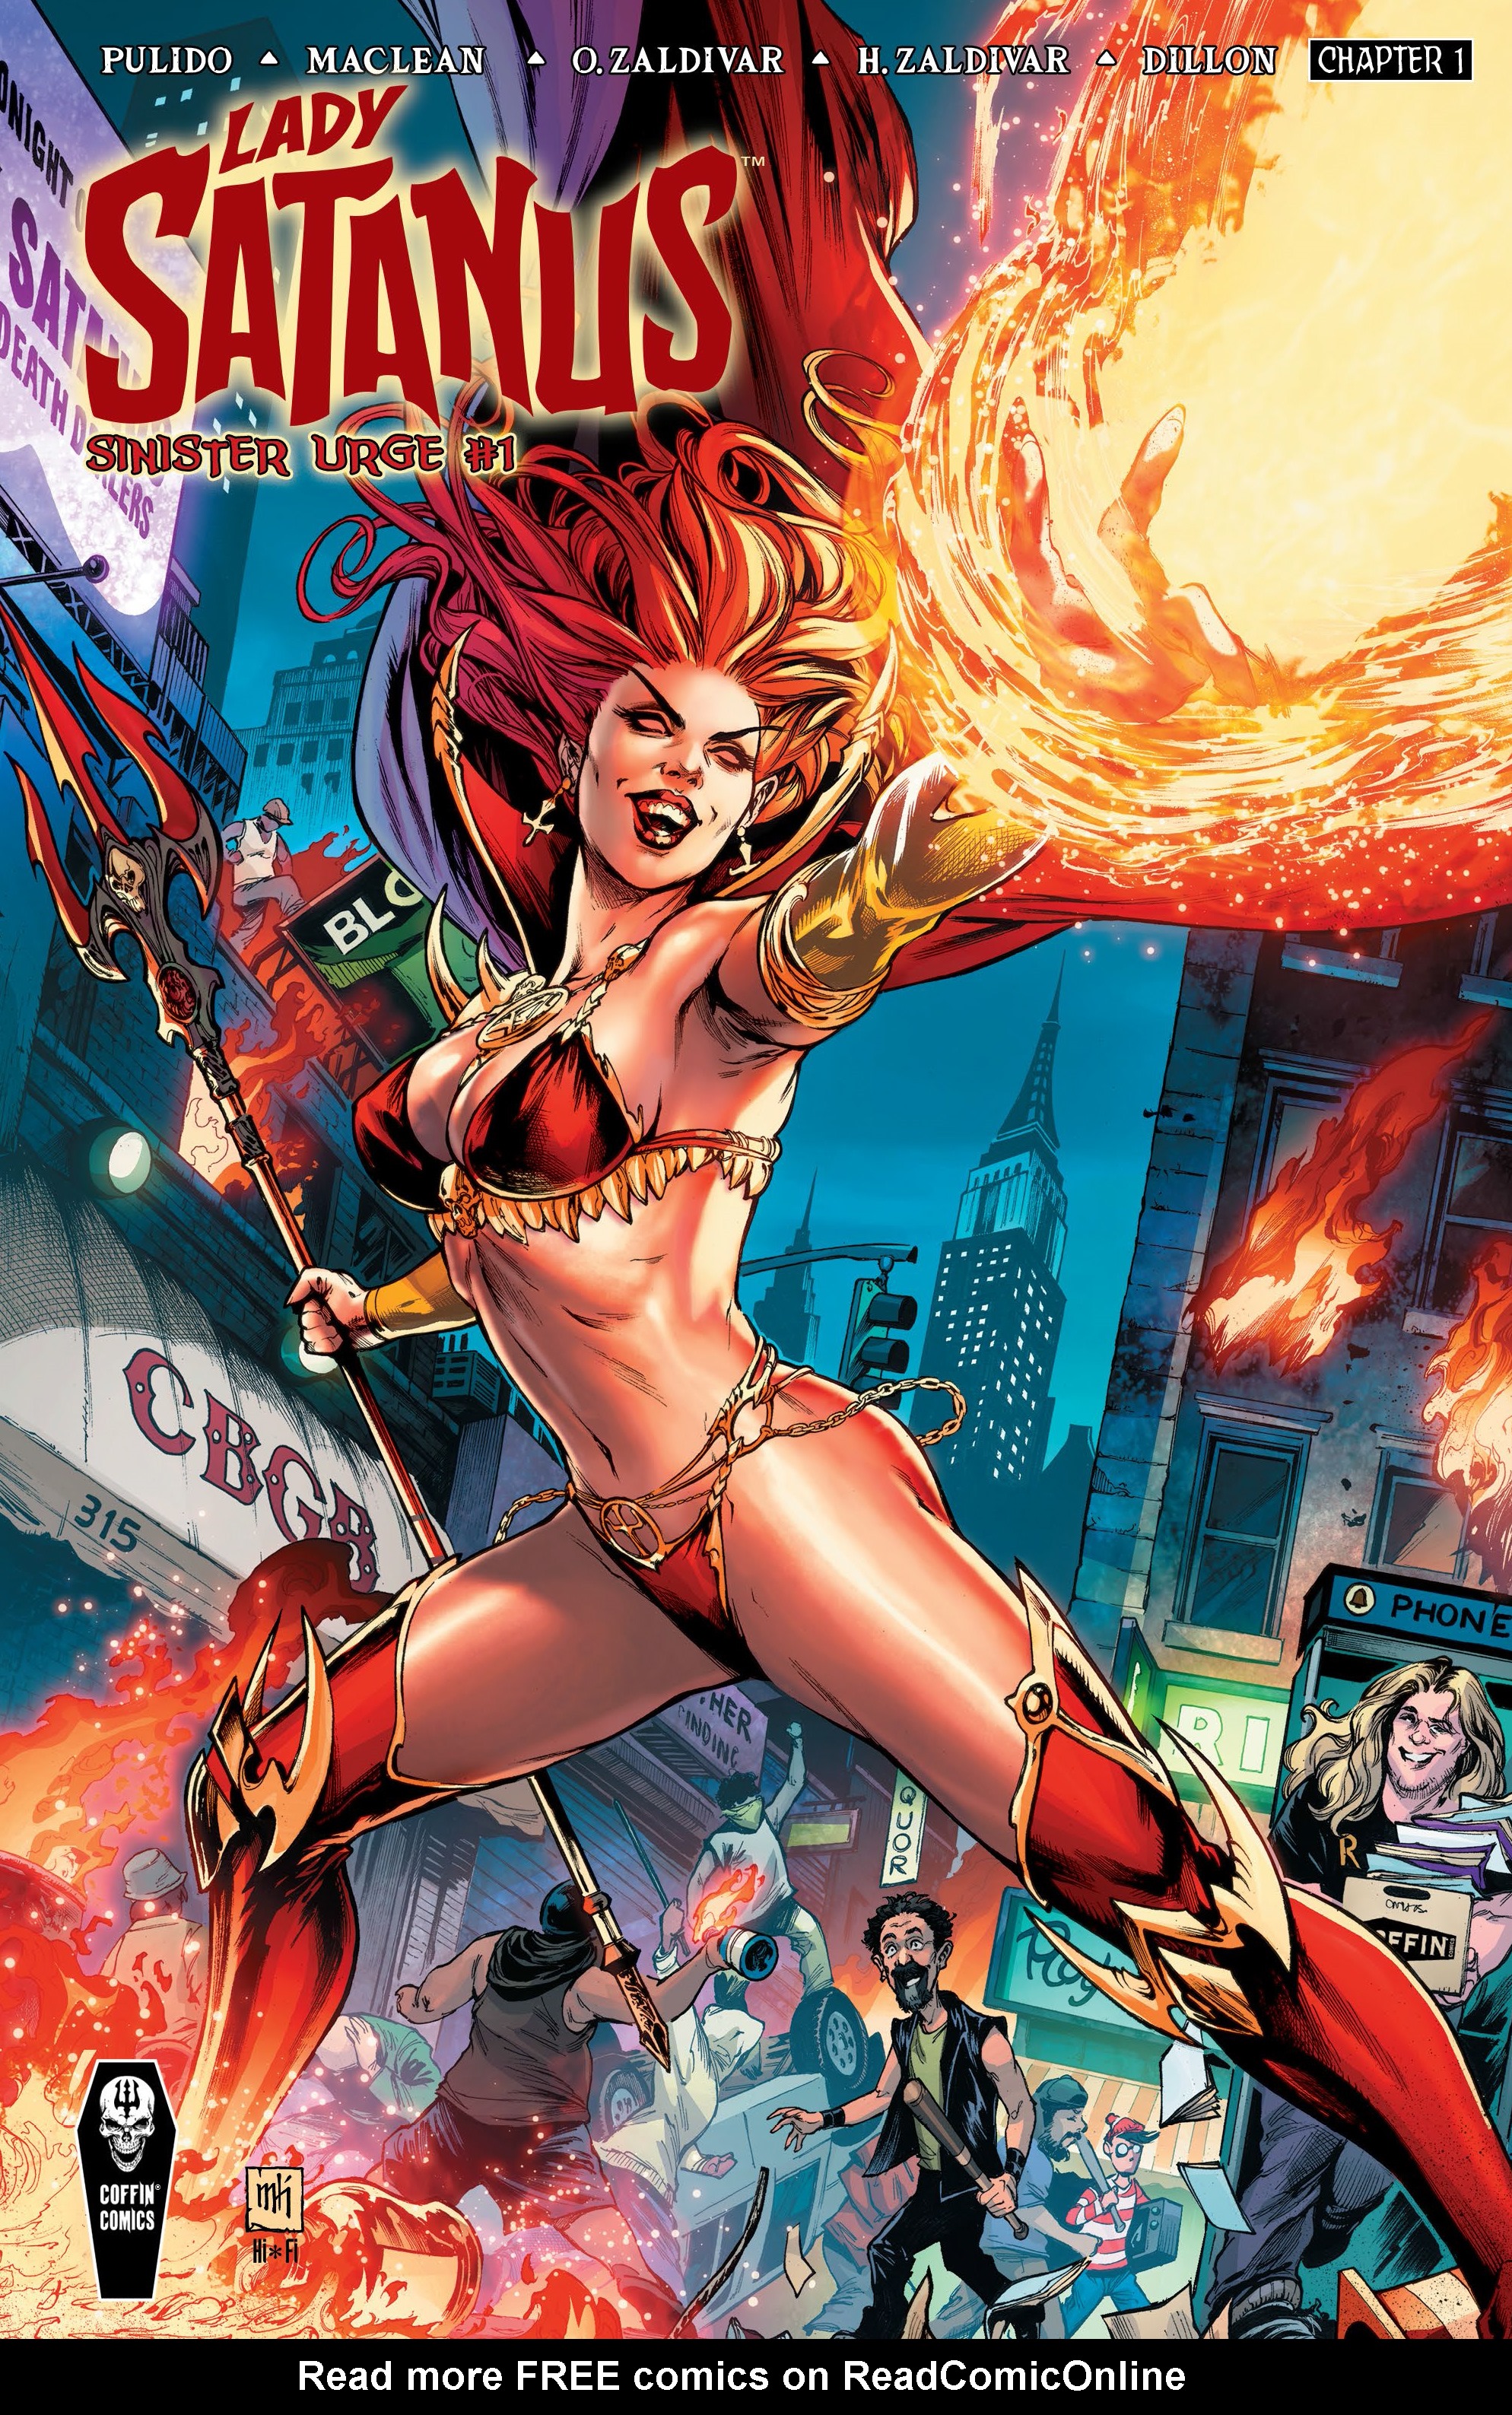 Read online Lady Satanus: Sinister Urge comic -  Issue # TPB - 1